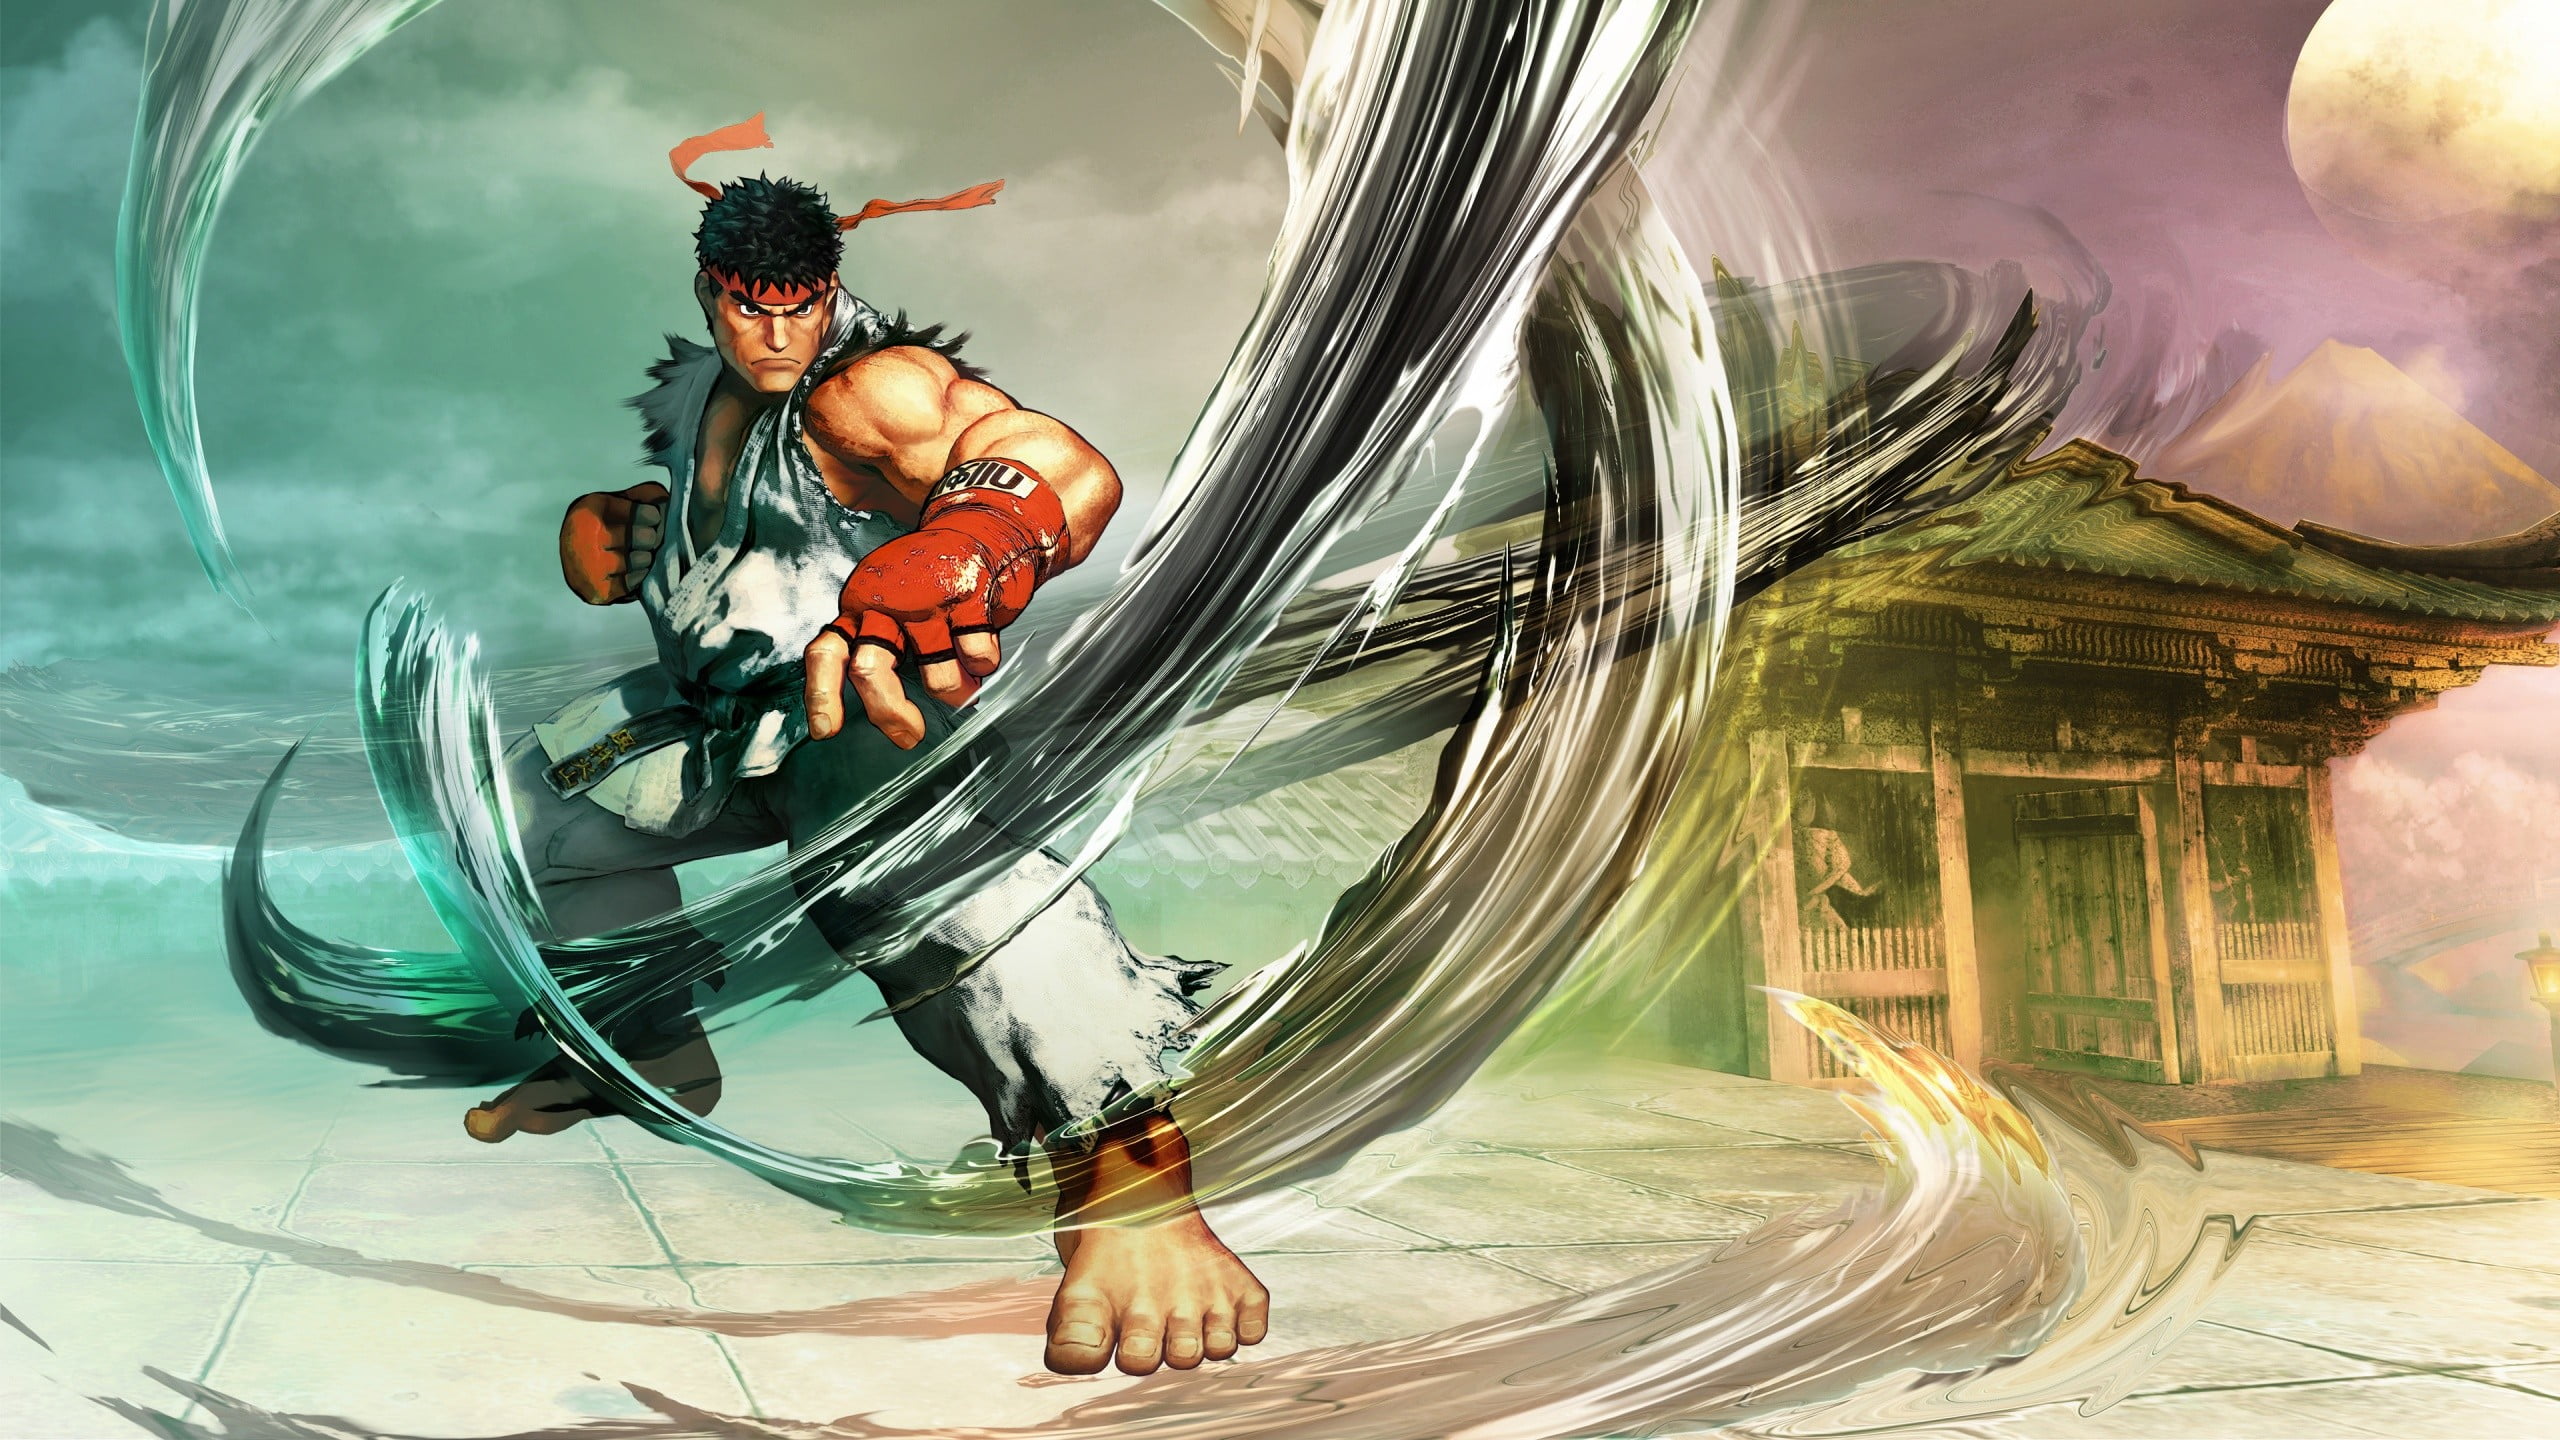 Ryu from Street Fighter, Street Fighter, Street Fighter V, Ryu (Street Fighter), video games